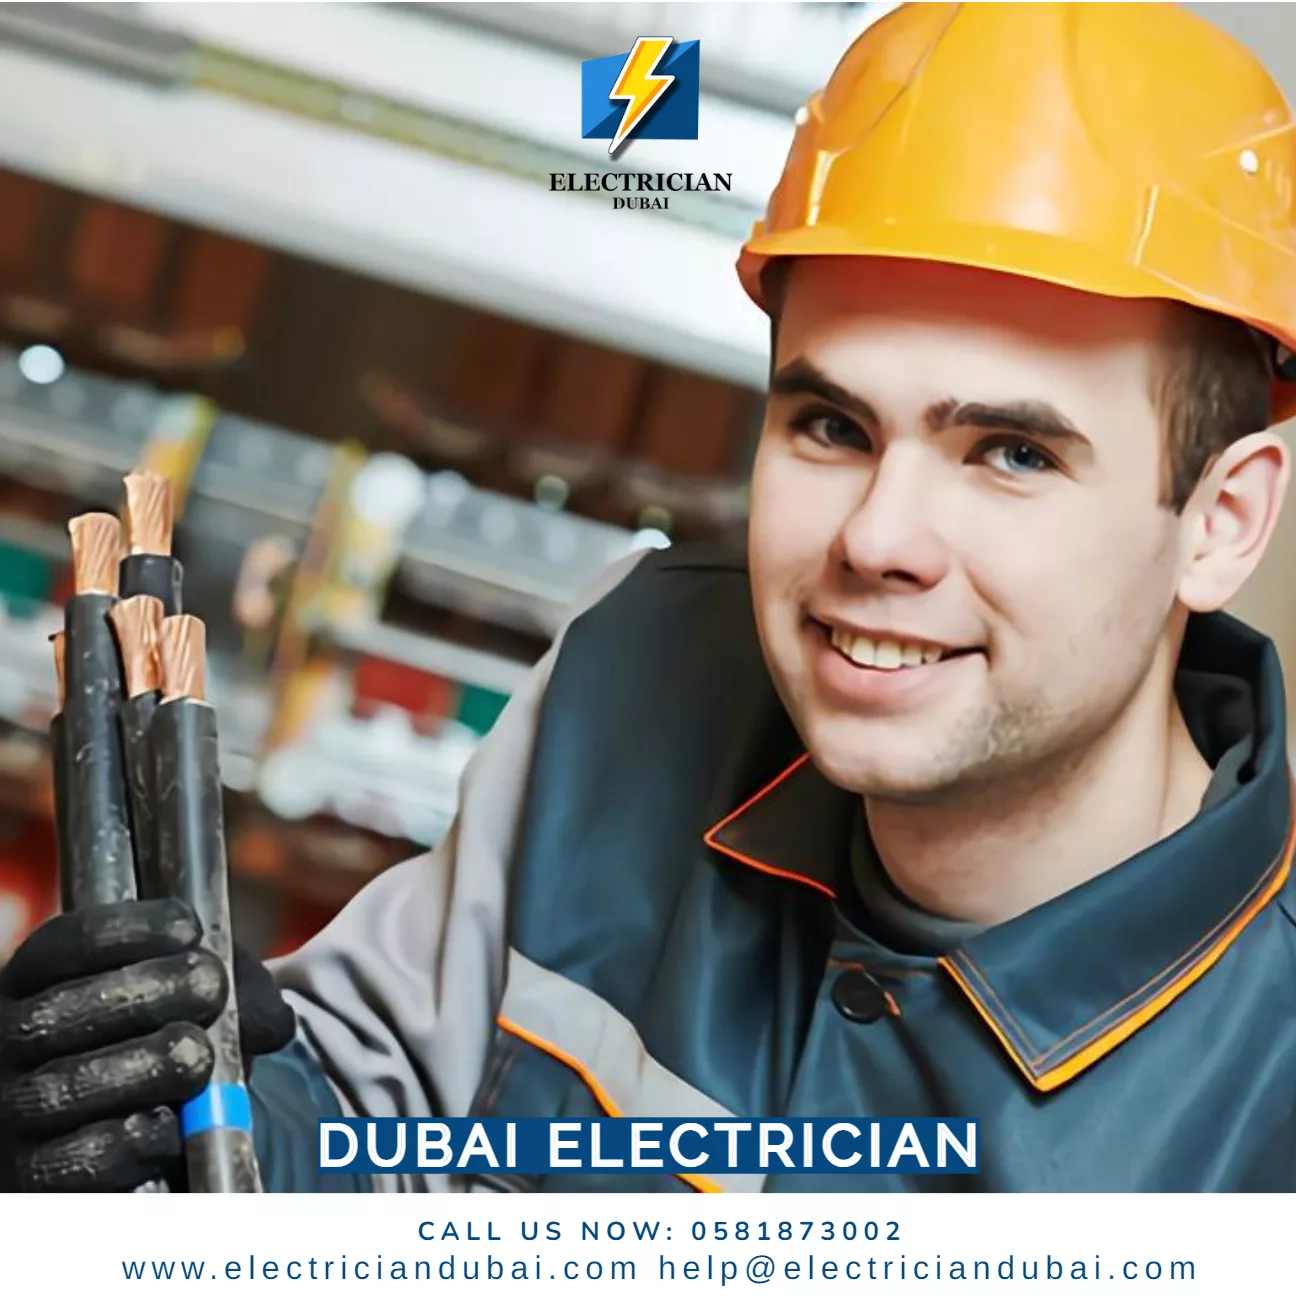 Dubai Electrician